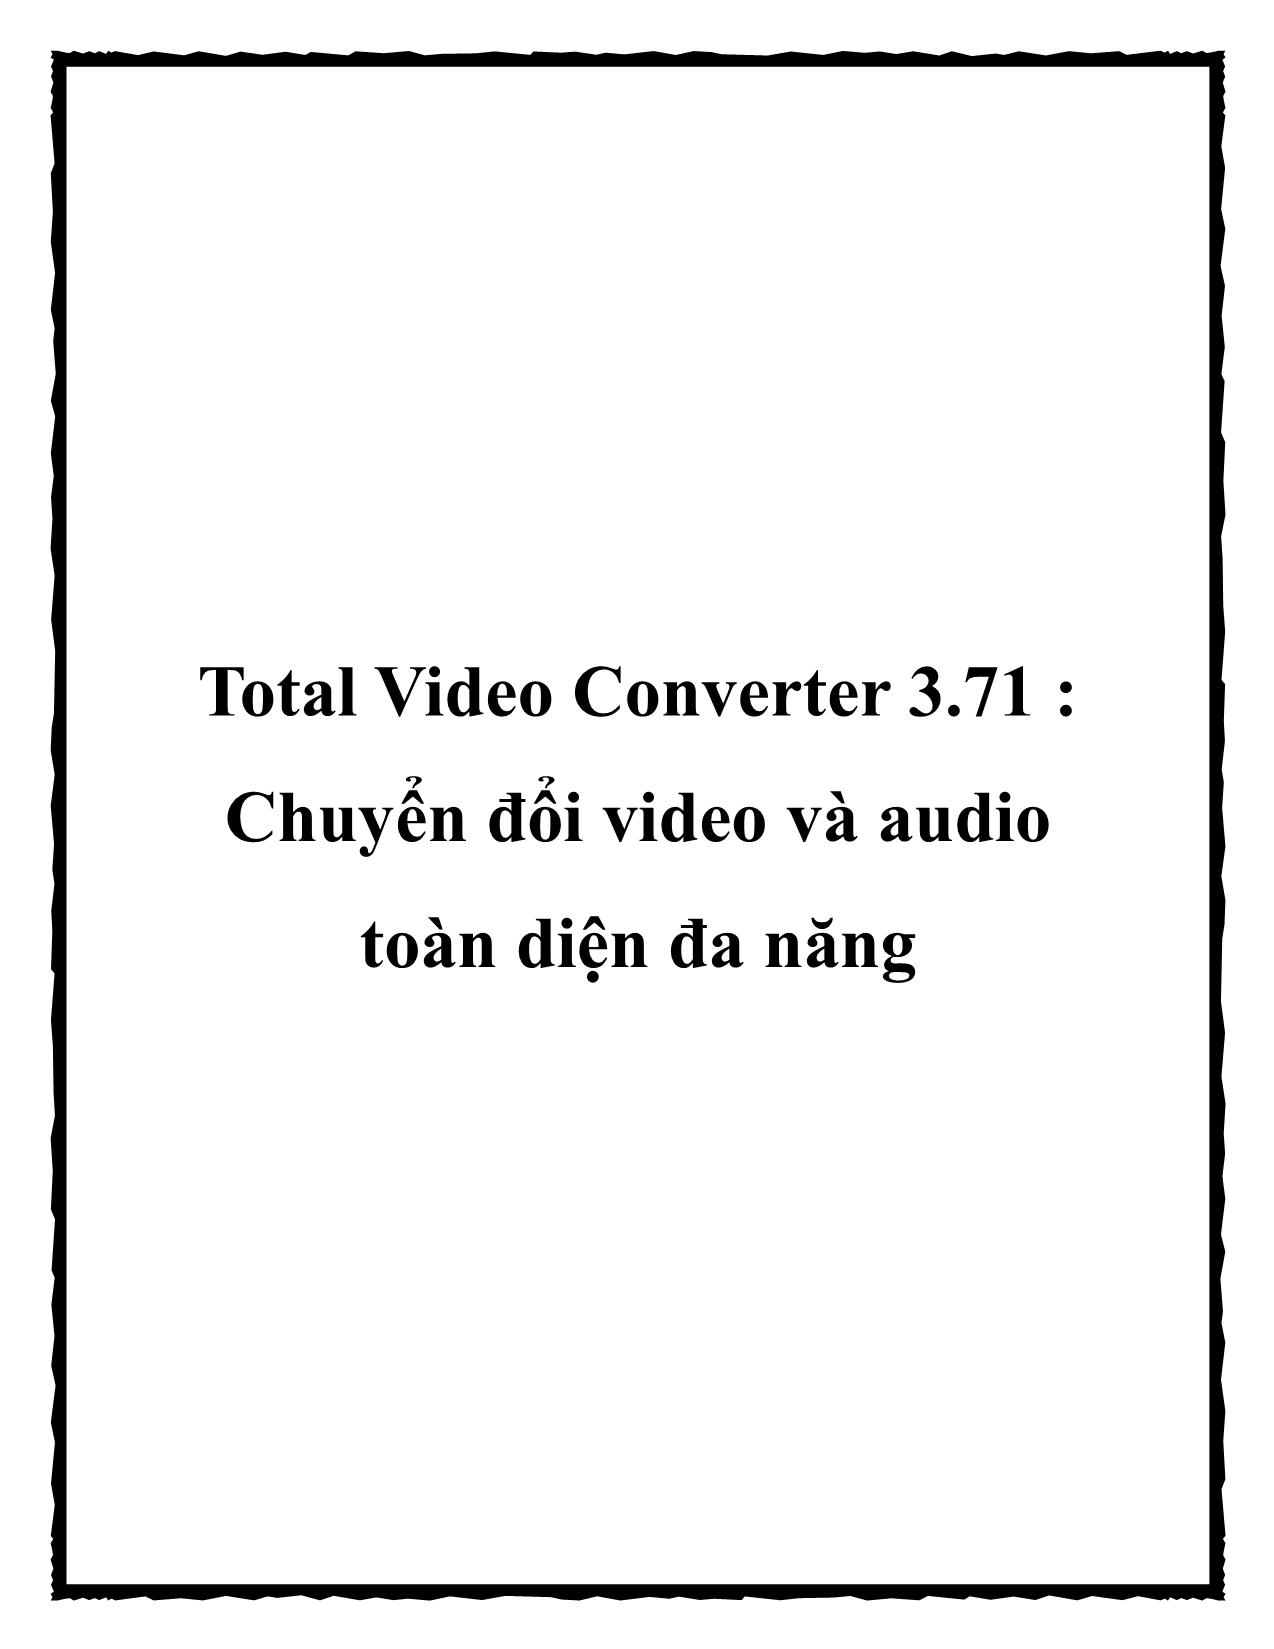 Chuyển đổi video và audio toàn diện đa năng trang 1